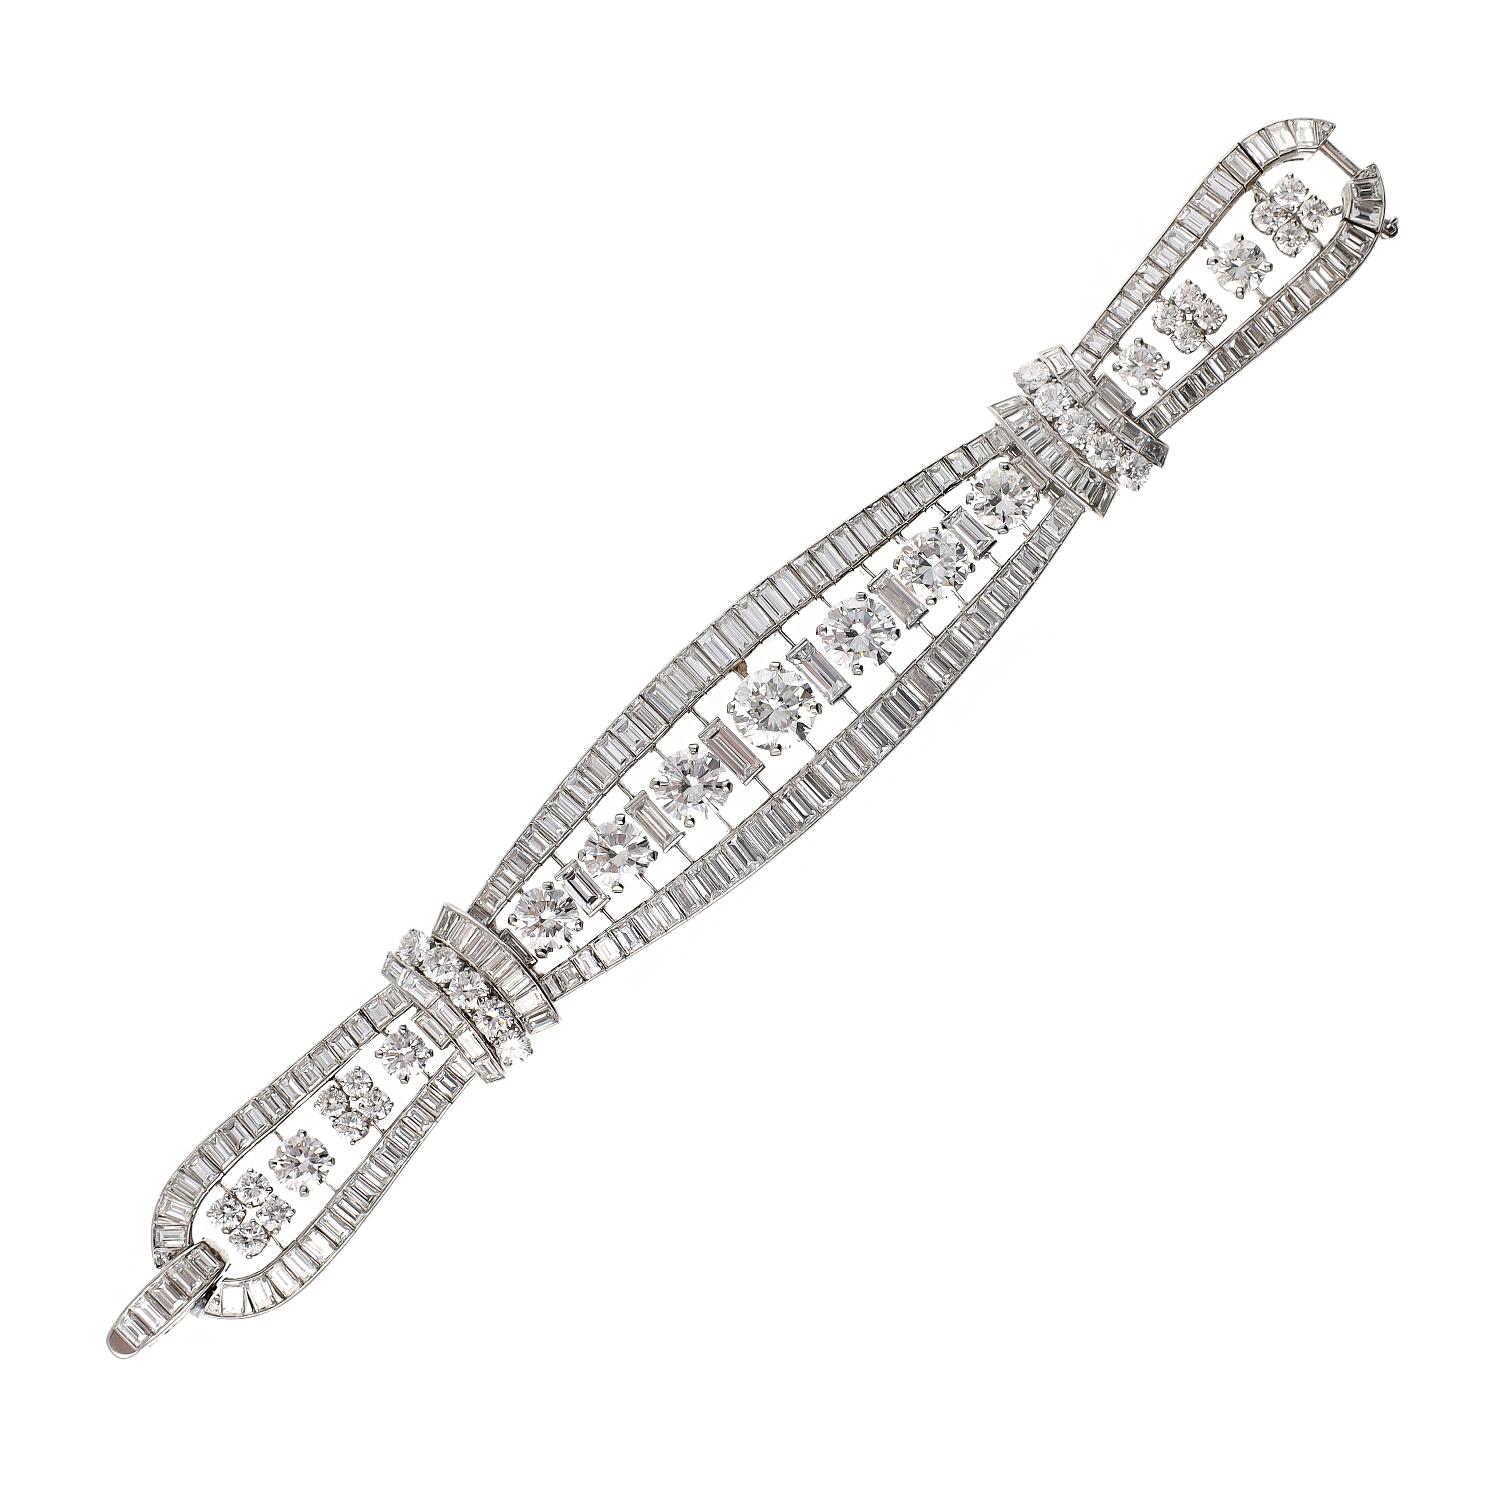 AN CLEEf & ARPELS Rundes & Baguette-Diamantenarmband
Flexibles Band, besetzt mit runden Brillanten und Baguette-Diamanten, montiert in Platin, signiert Van Cleef & Arpels.
Die Gesamtlänge beträgt ca. 7″ bei einer Breite von 0,50-1,0″
Gesamtes